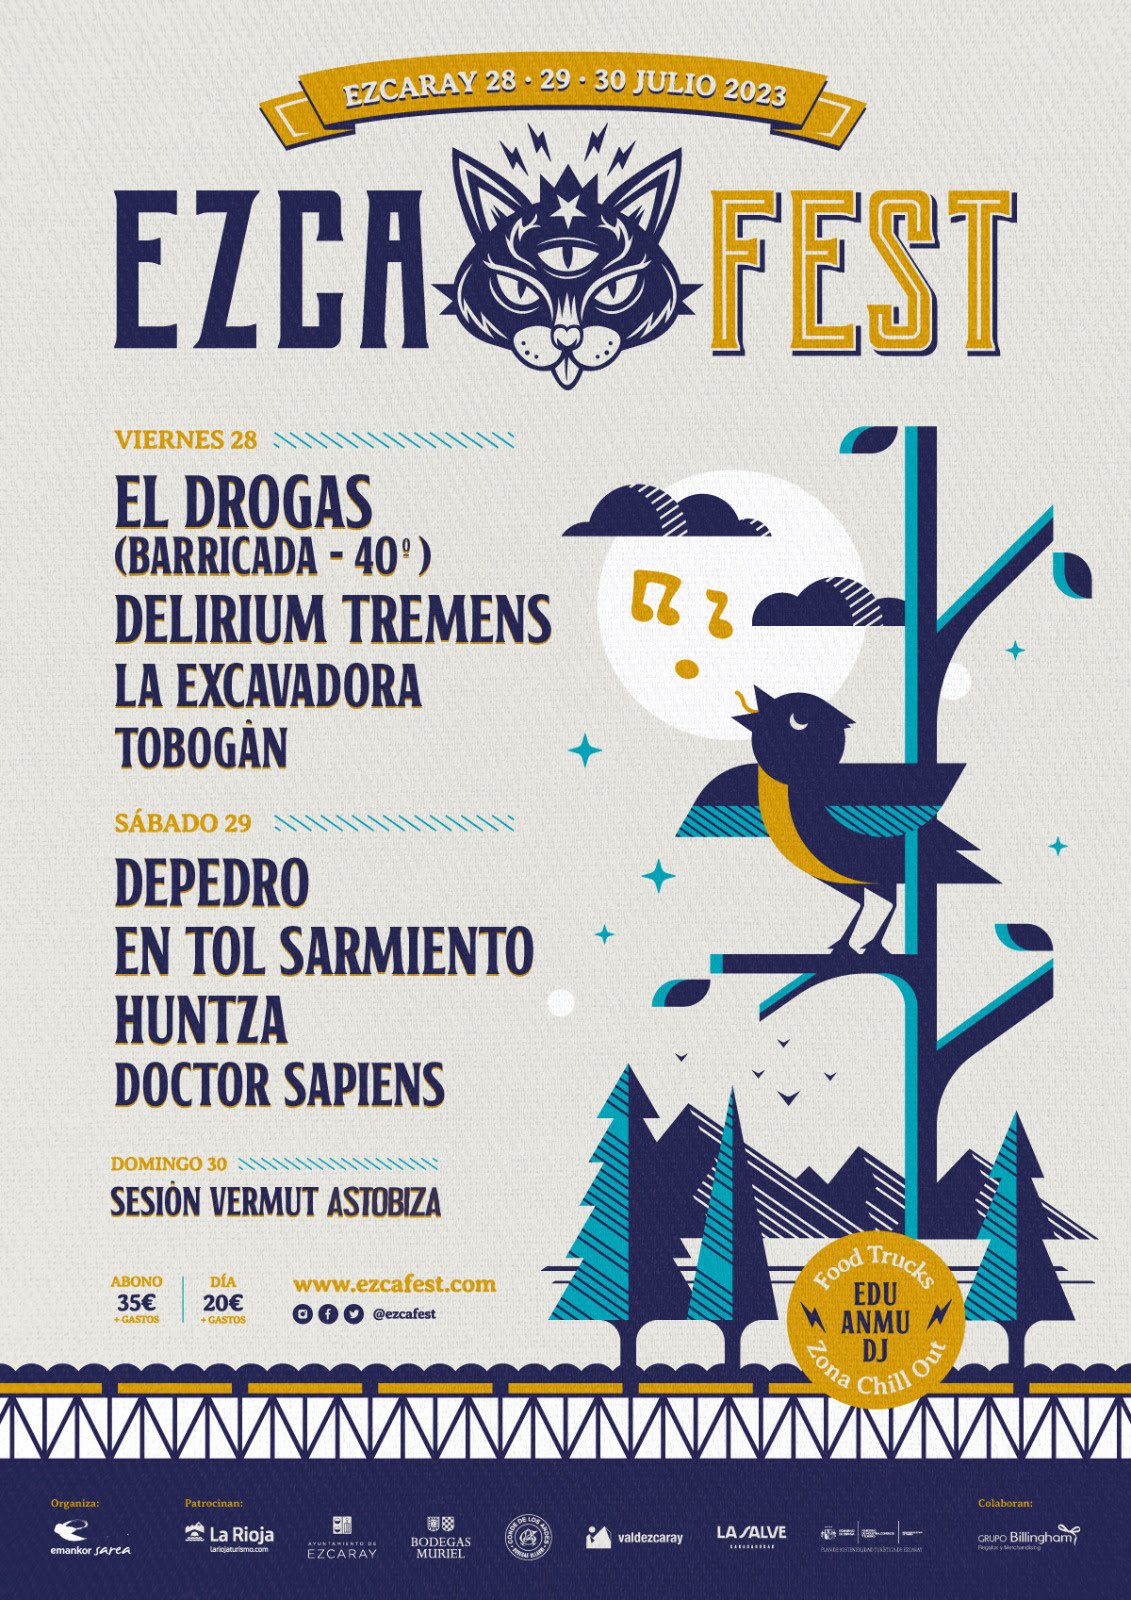 Ezcafest 2023 – 28, 29 y 30 de julio en Ezcaray (La Rioja)